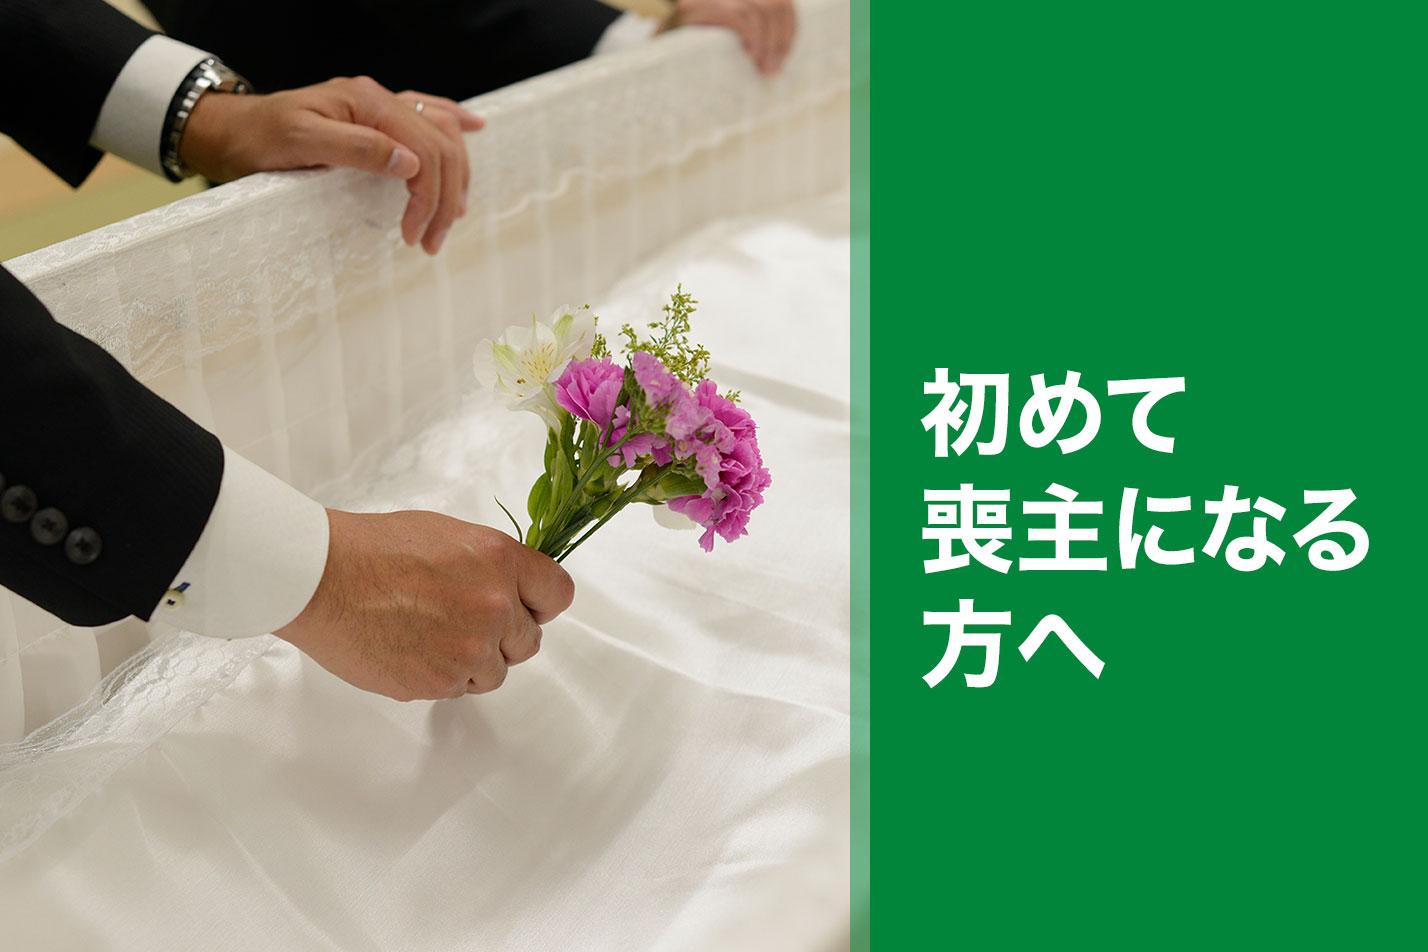  小平市ではじめての葬儀を行う喪主様へのイメージ画像